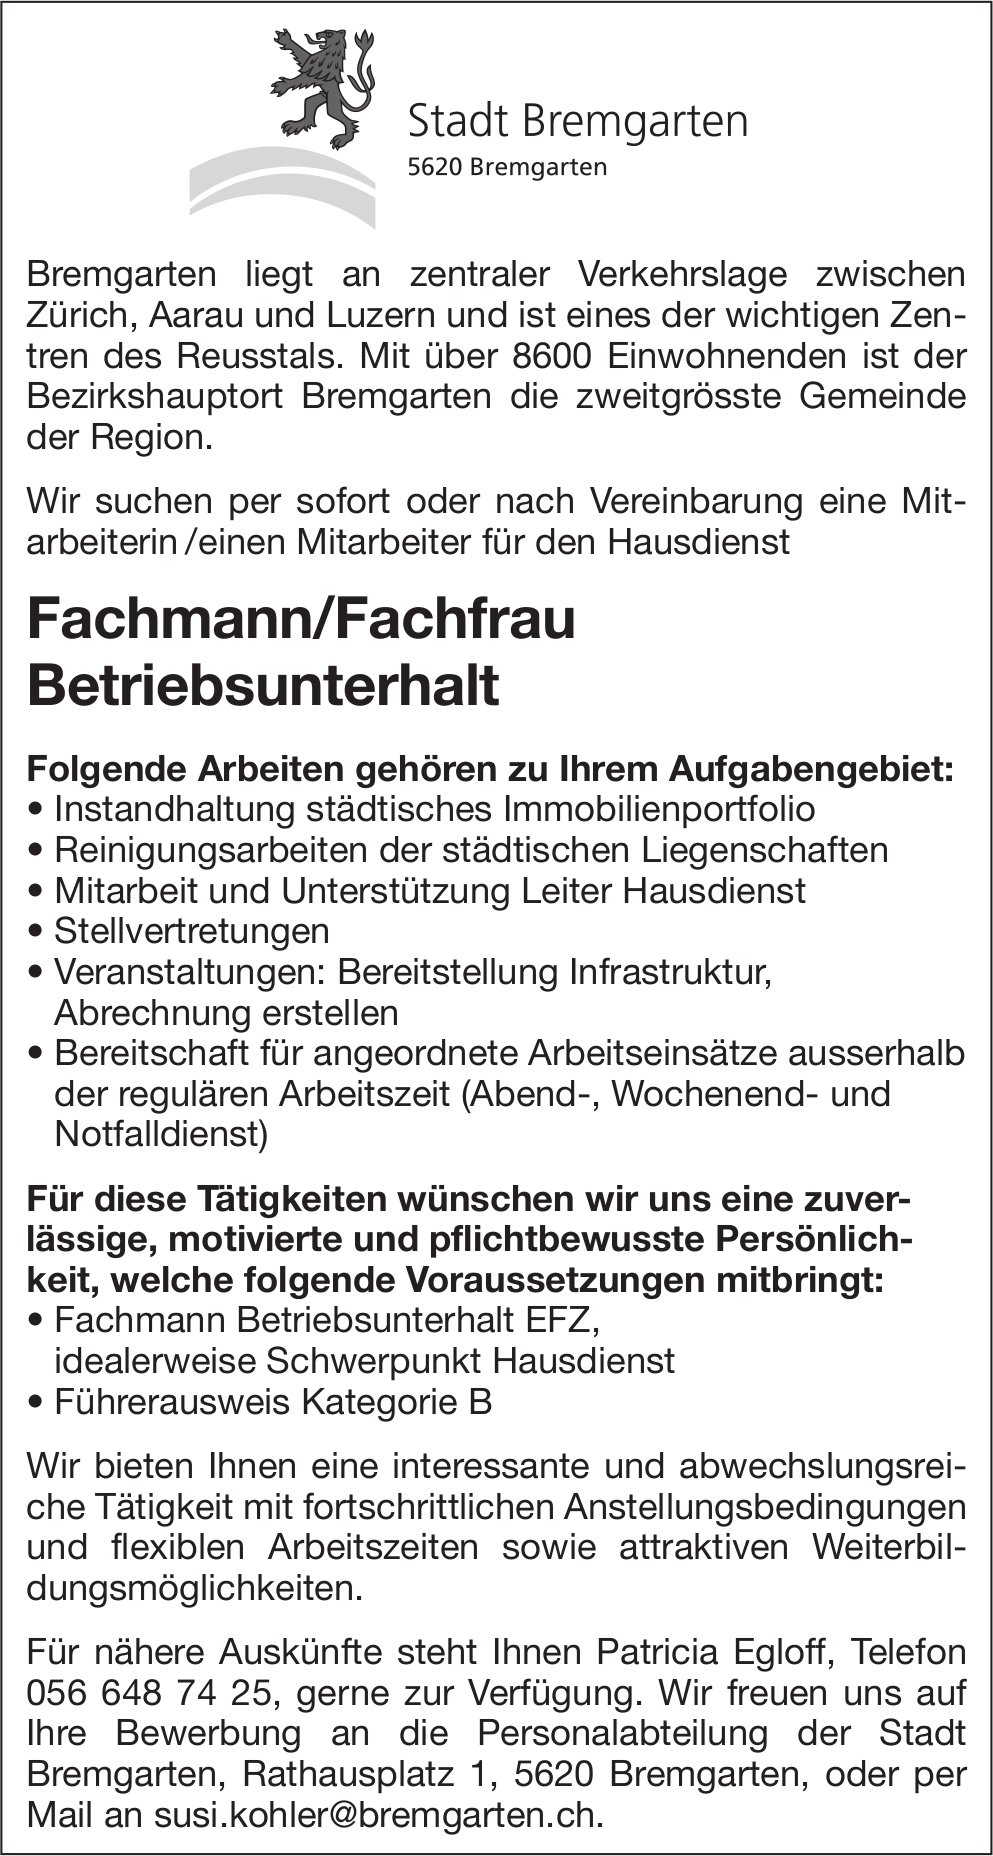 Fachmann/Fachfrau Betriebsunterhalt, Stadt, Bremgarten, gesucht